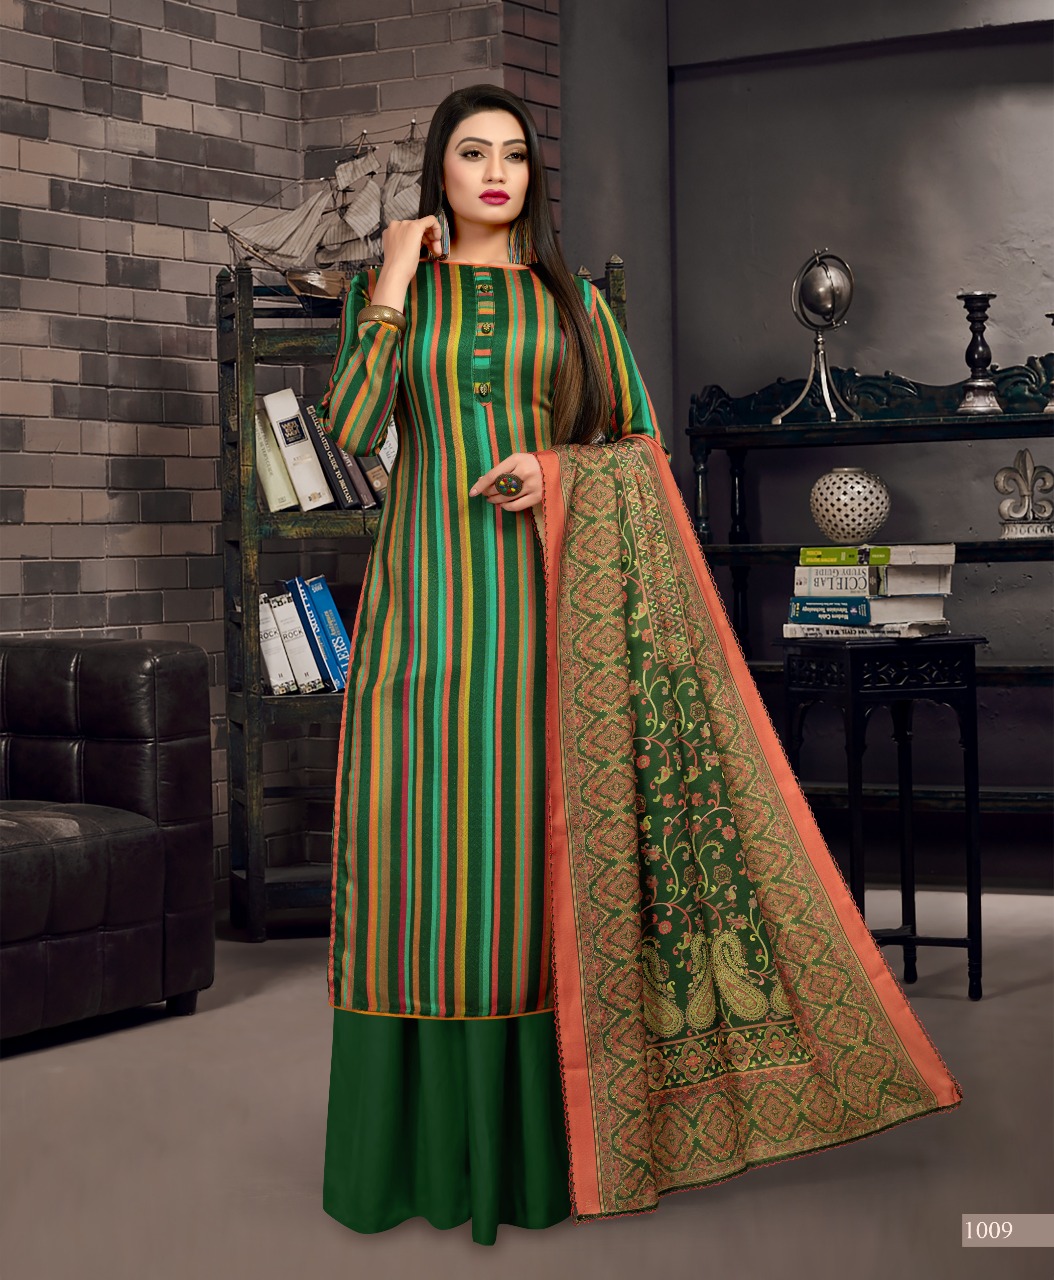 Bipson sakhiya Woollen Pashmina Digital Print authentic fabric salwar suit catalog